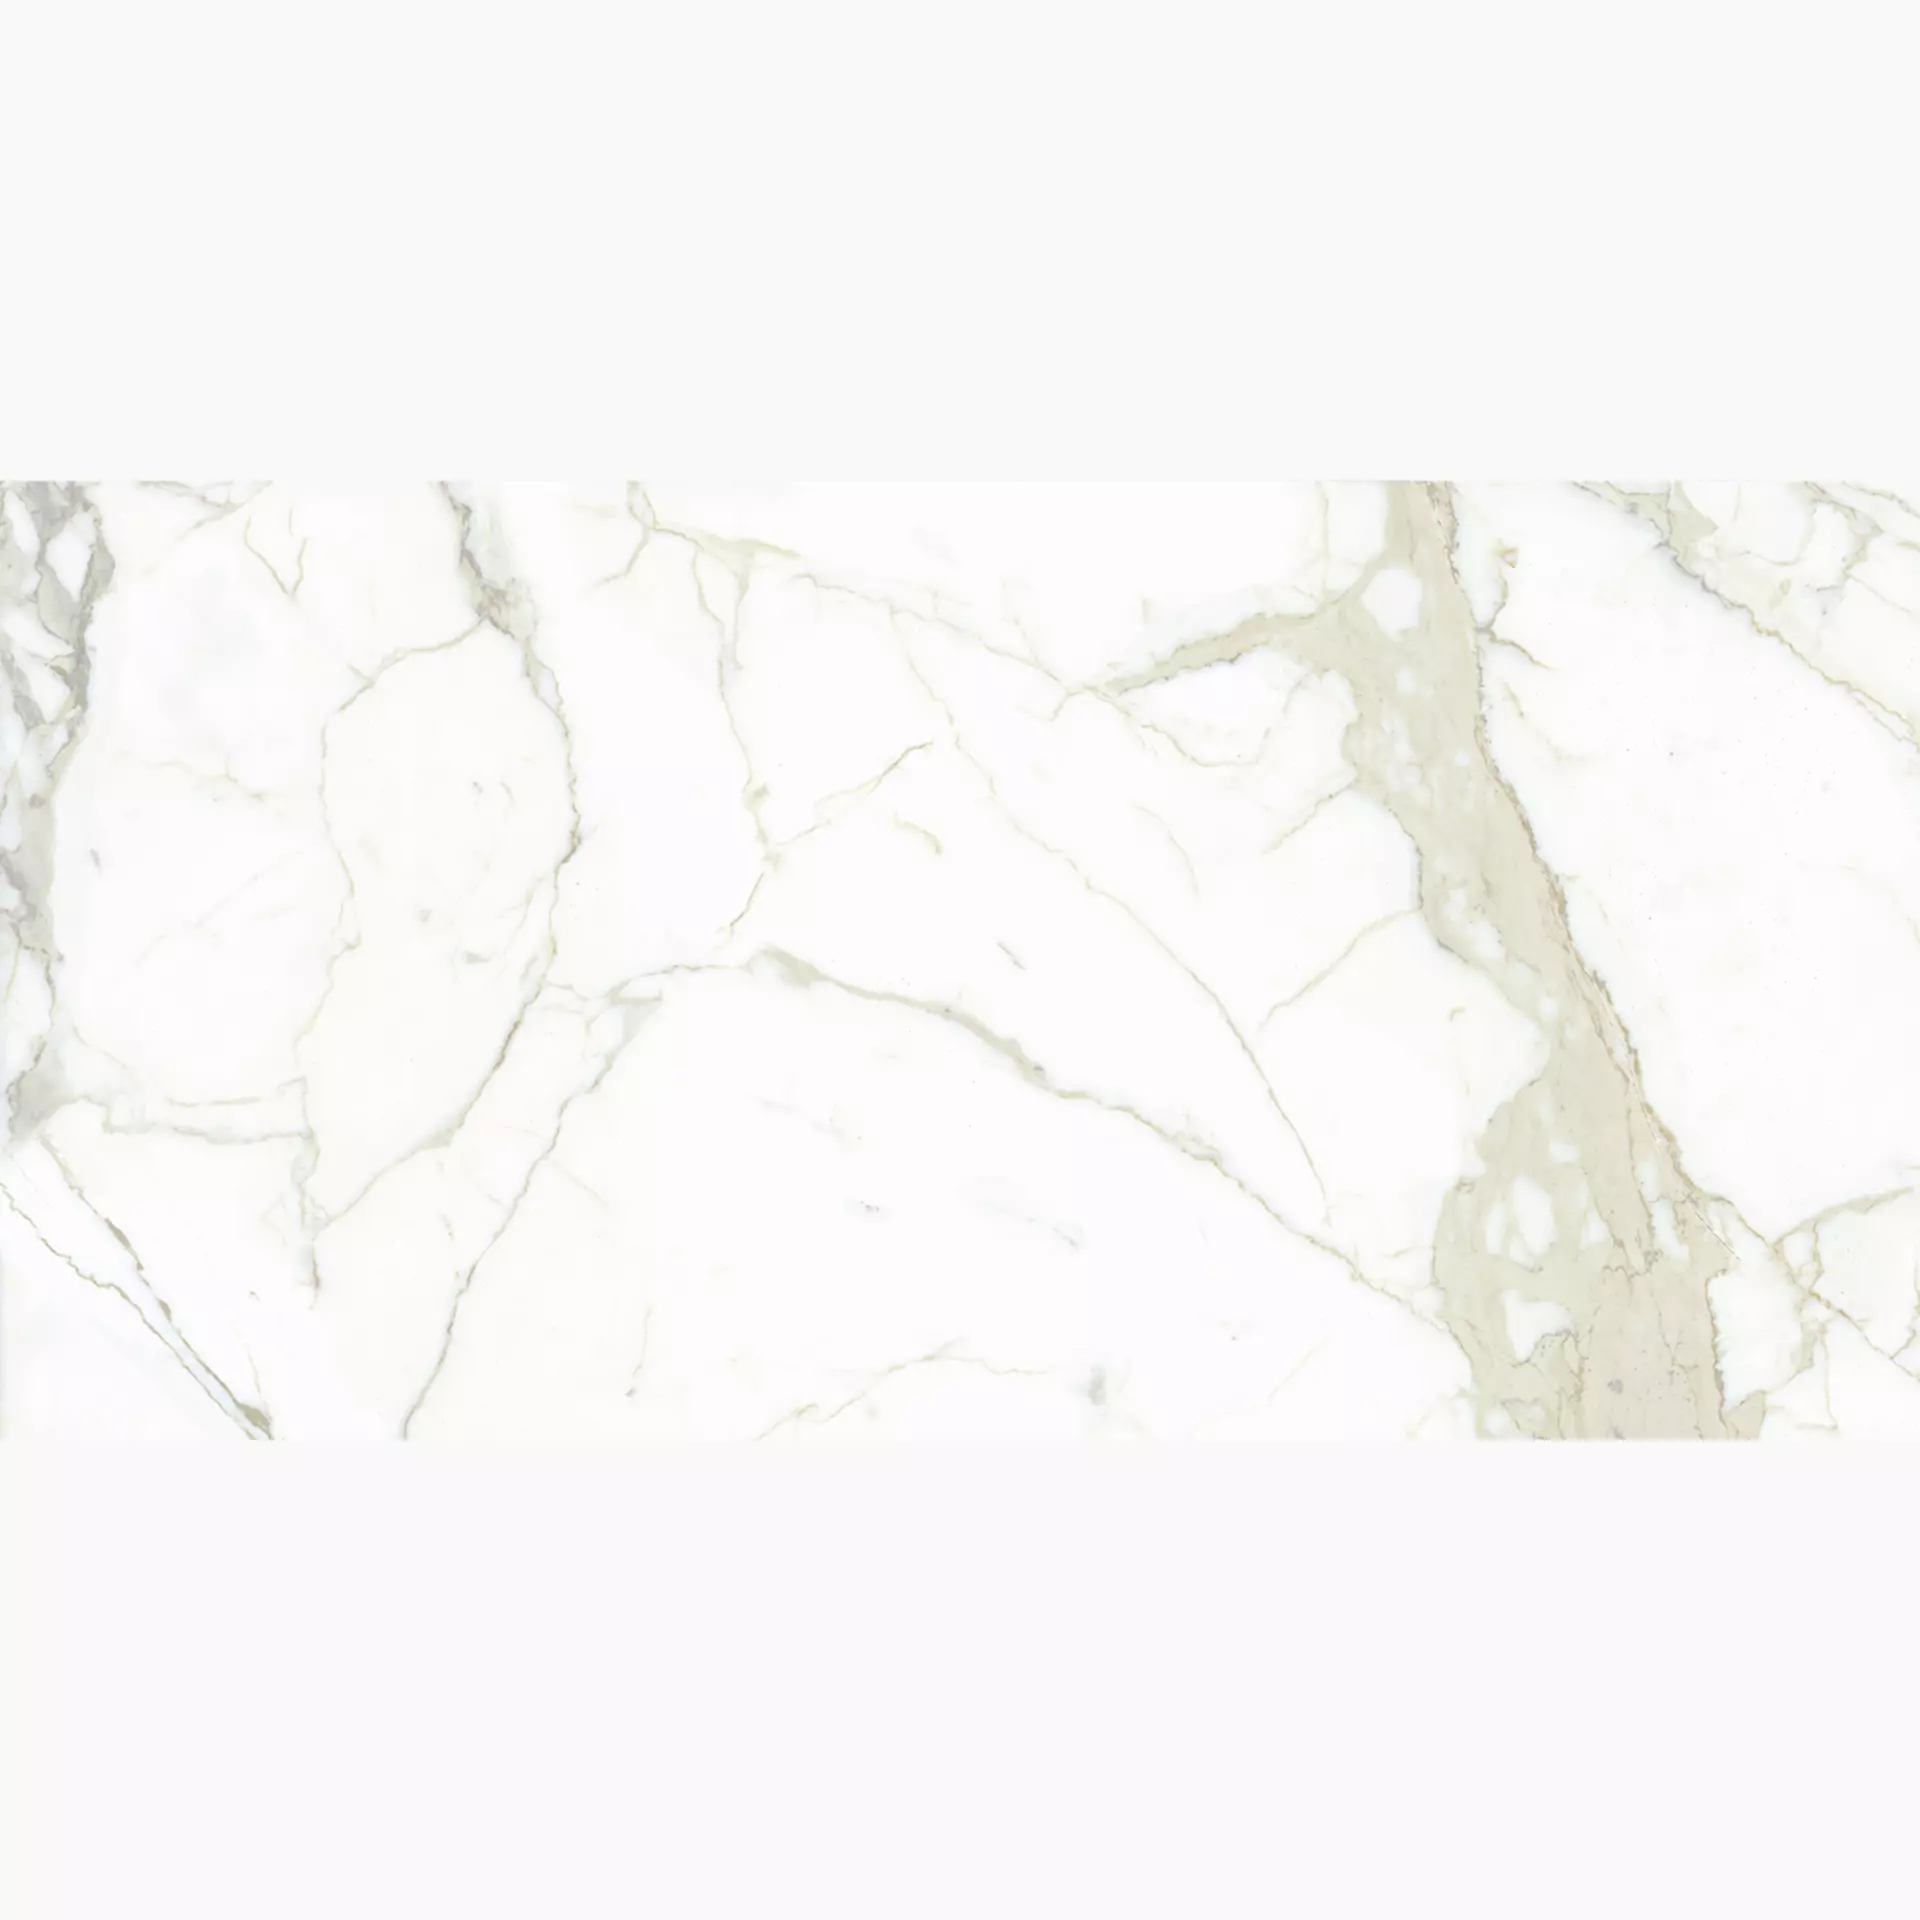 Maxfine Marmi White Calacatta Lucidato L175332MF6 75x150cm rectified 6mm